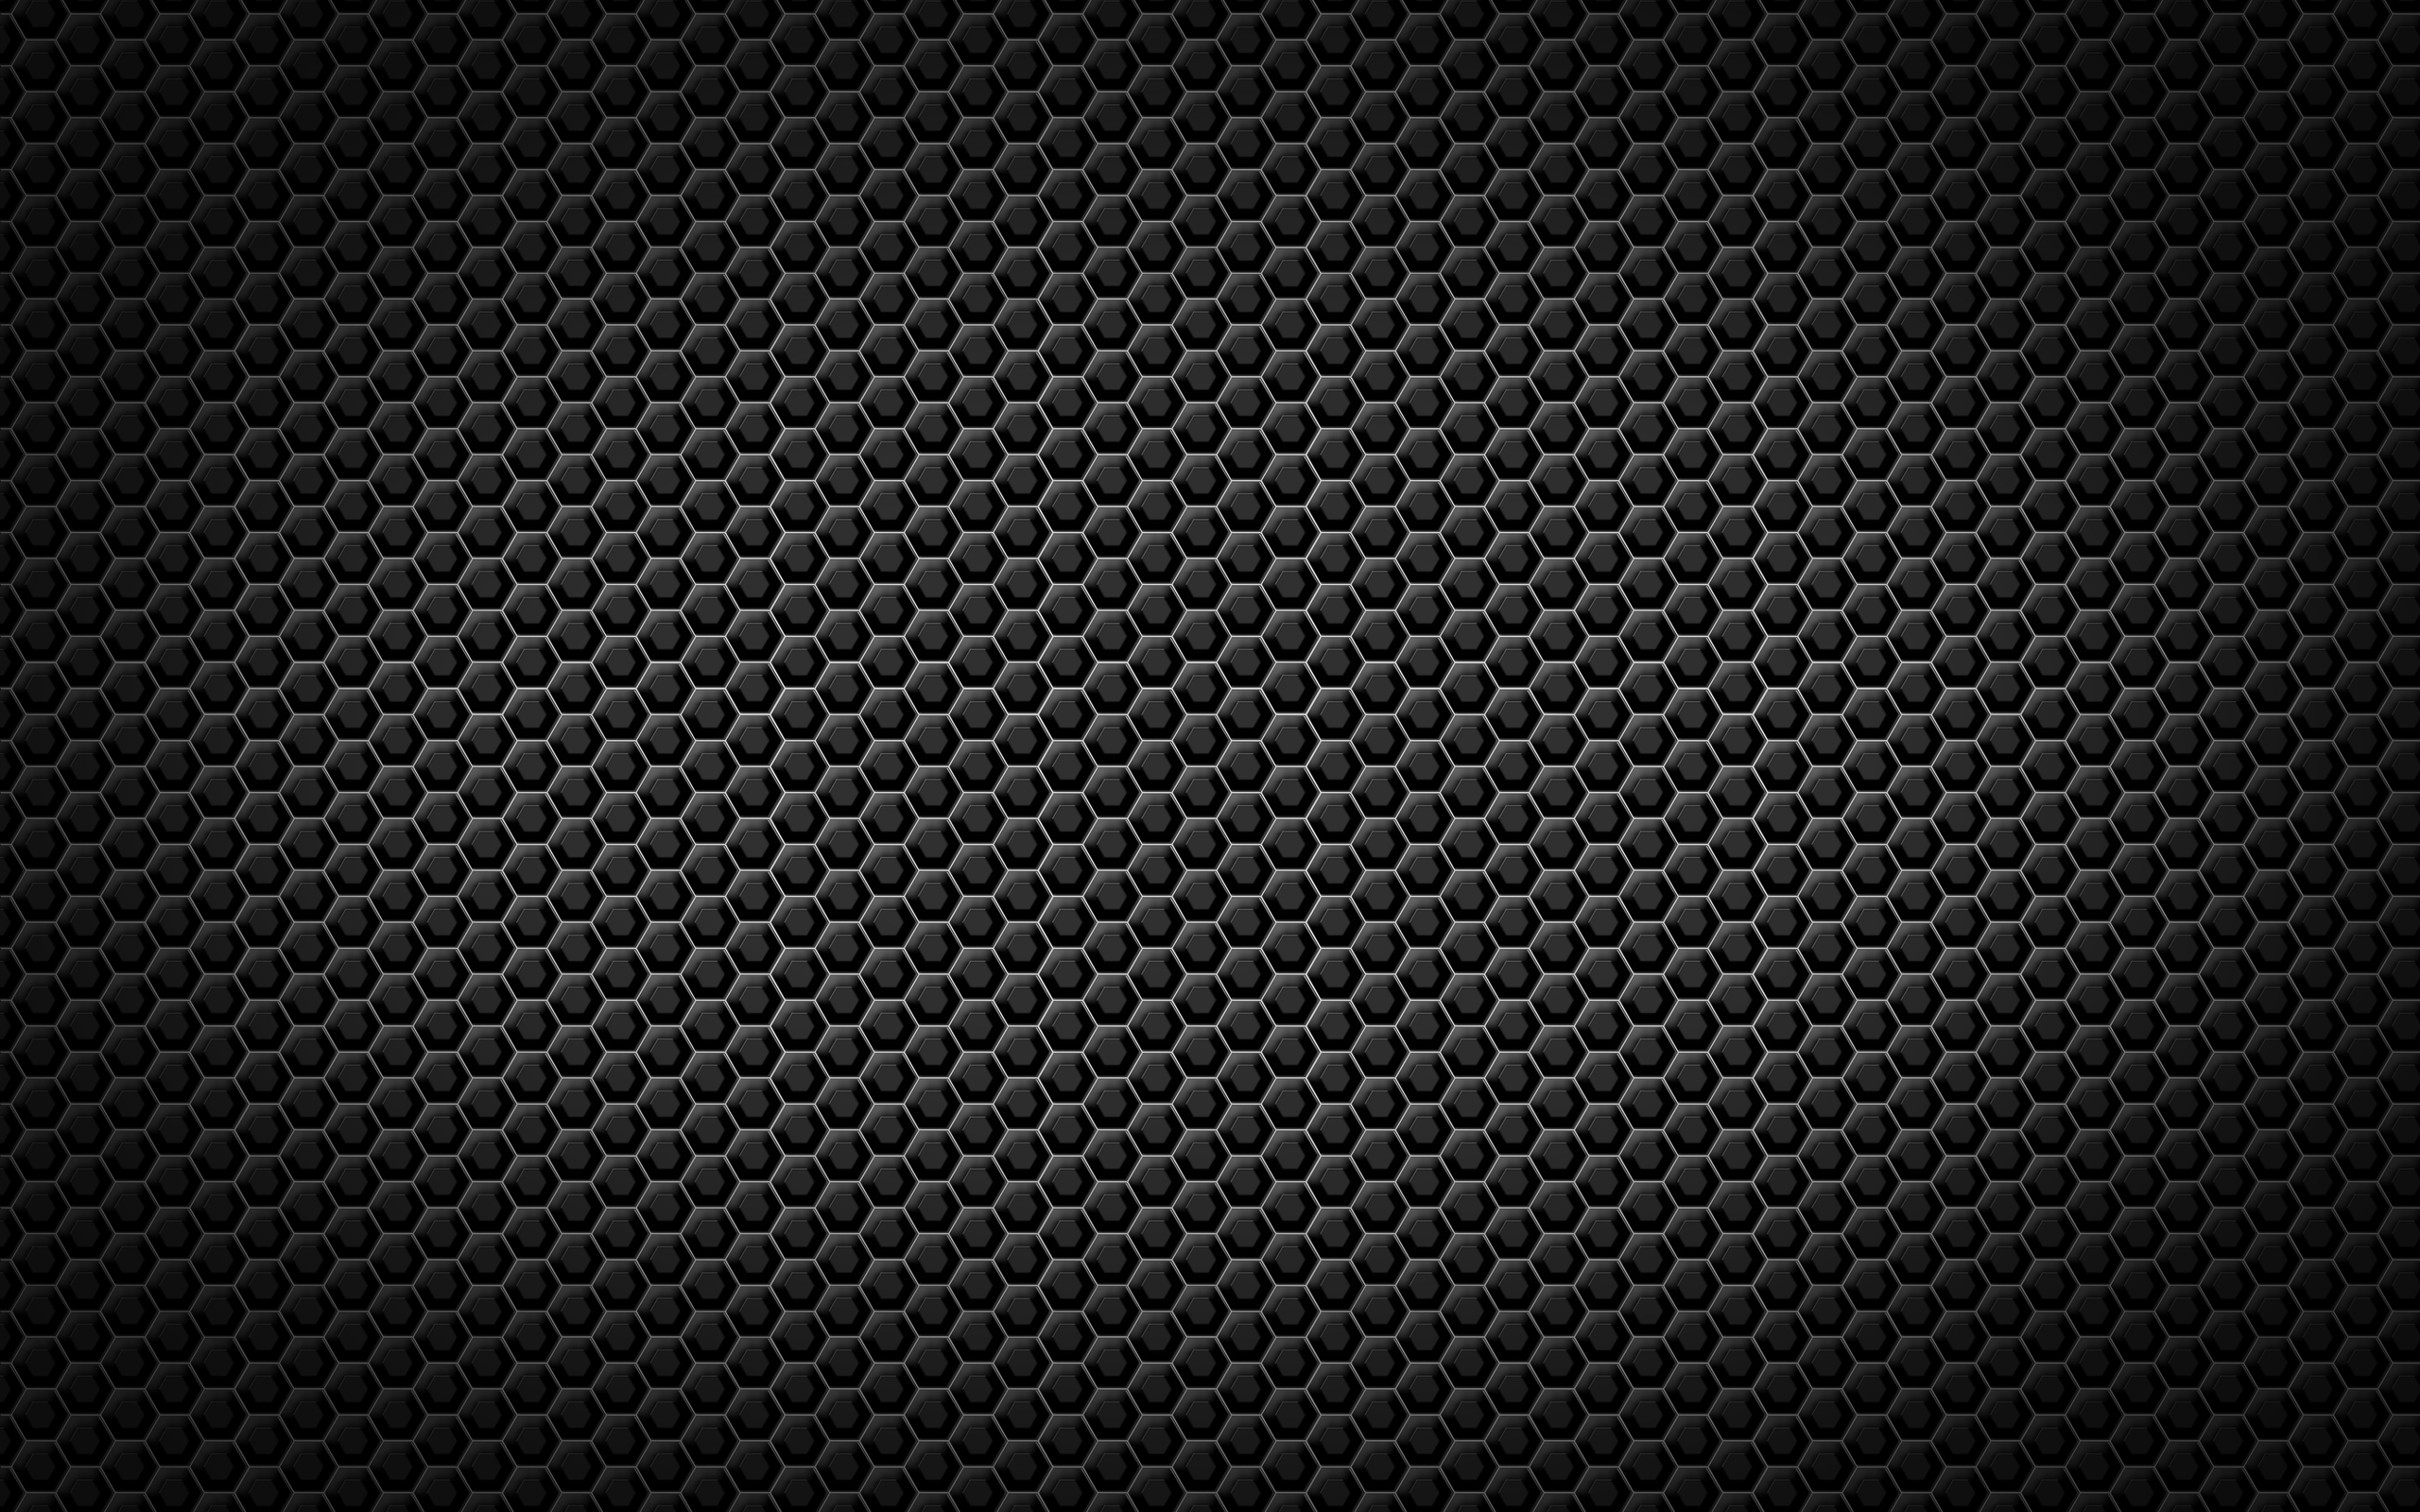 Black Wallpaper Texture Hex Wallpapers And Images HD Wallpapers Download Free Images Wallpaper [wallpaper981.blogspot.com]